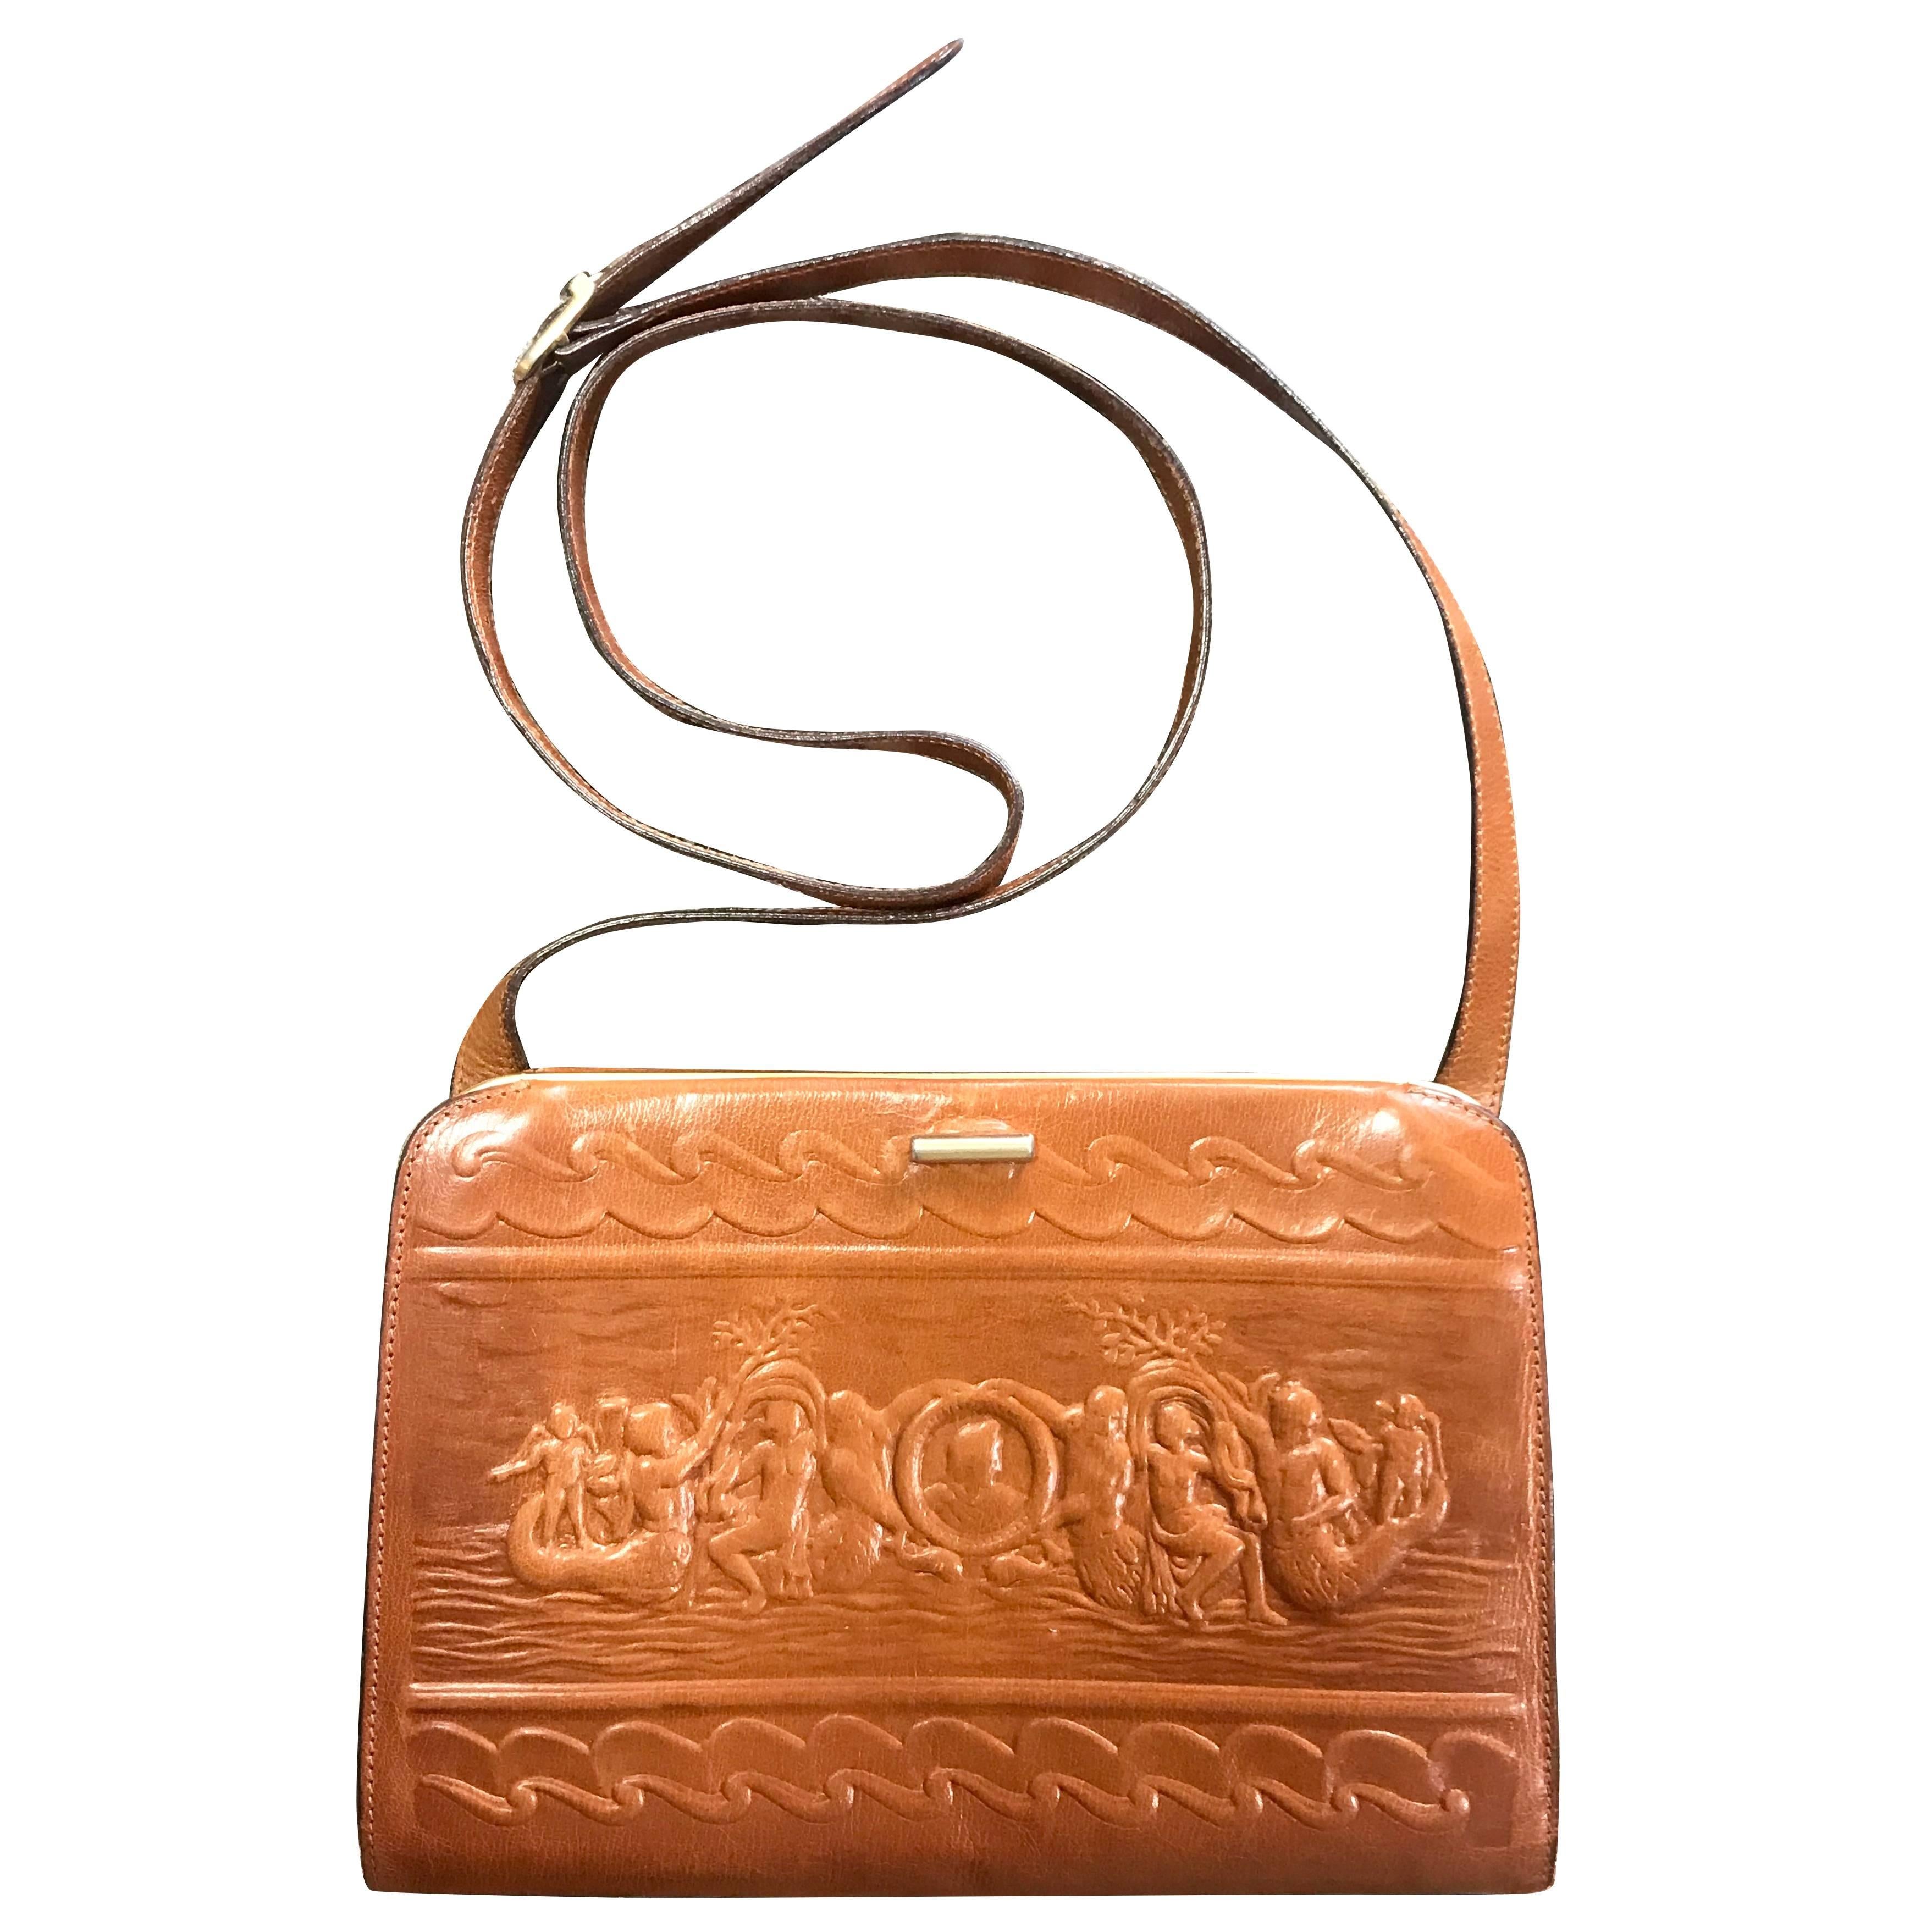 Fendi Vintage brown leather shoulder bag / large clutch purse with embossed art For Sale